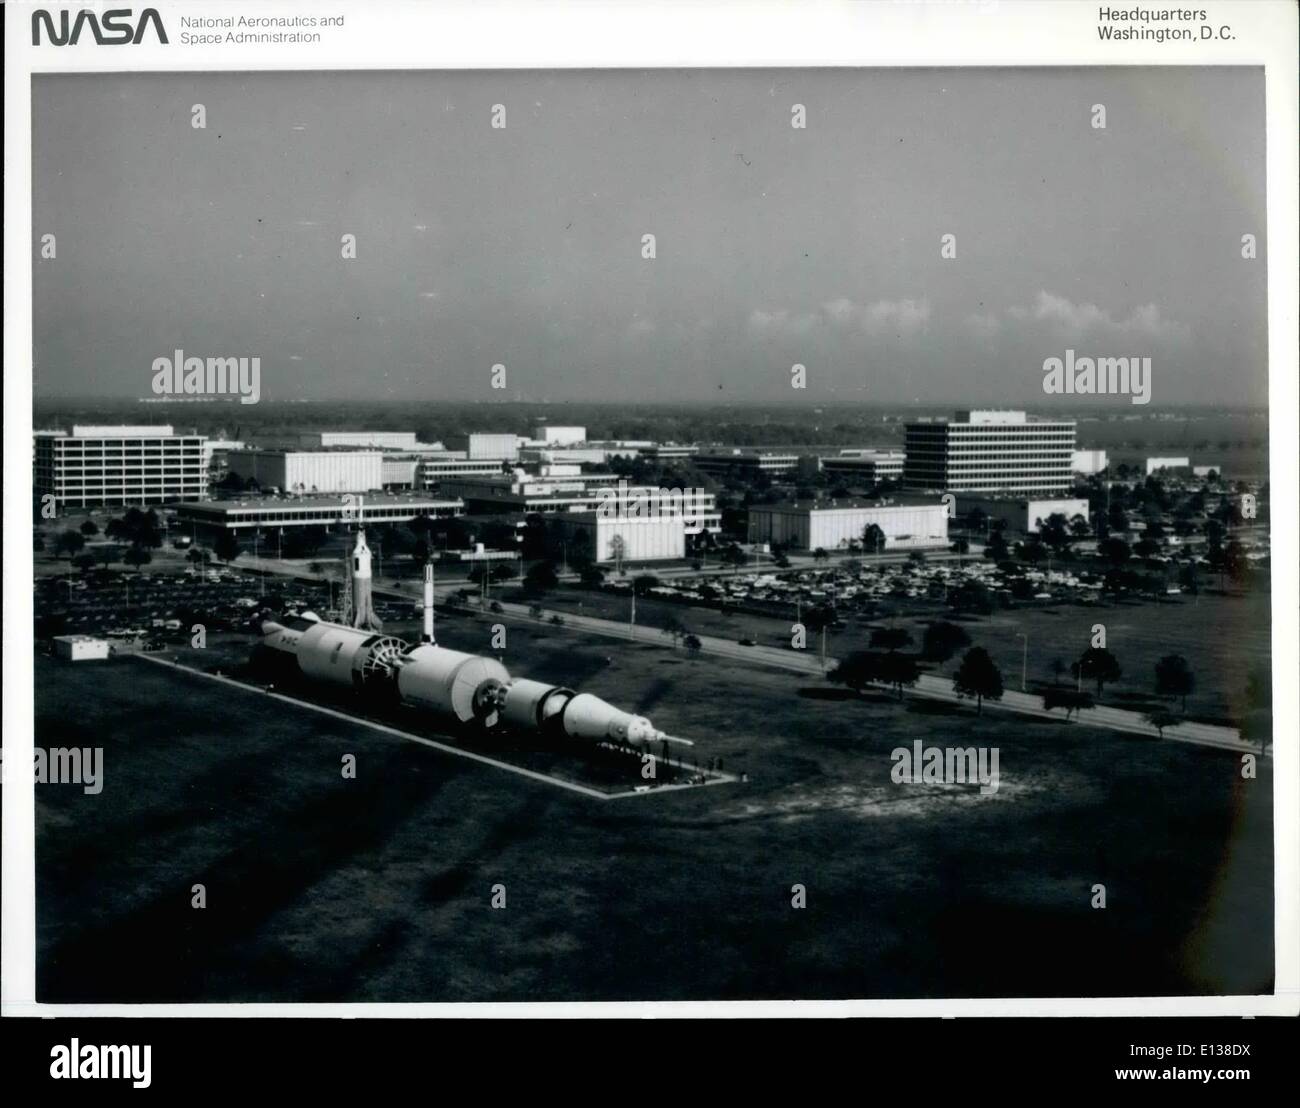 Febbraio 29, 2012 - Johnson Space Center di Houston, Texas. La JSC SCENA AEREA---questo nord - est vista in cerca del centro spaziale Johnson è stato catturato da un fotografo a bordo di un volo bassa aerei della NASA nel dicembre 1982. Molte delle strutture nella zona centrale della NASA con sede a Houston center può essere riconosciuta. Un Saturn V del veicolo di lancio e modelli di Mercury-Redstone rucola e un po' di Joe rocket sono visti in primo piano. L'windowless facility, il secondo edificio sulla sinistra dal centro del telaio, è il controllo della missione centr Foto Stock